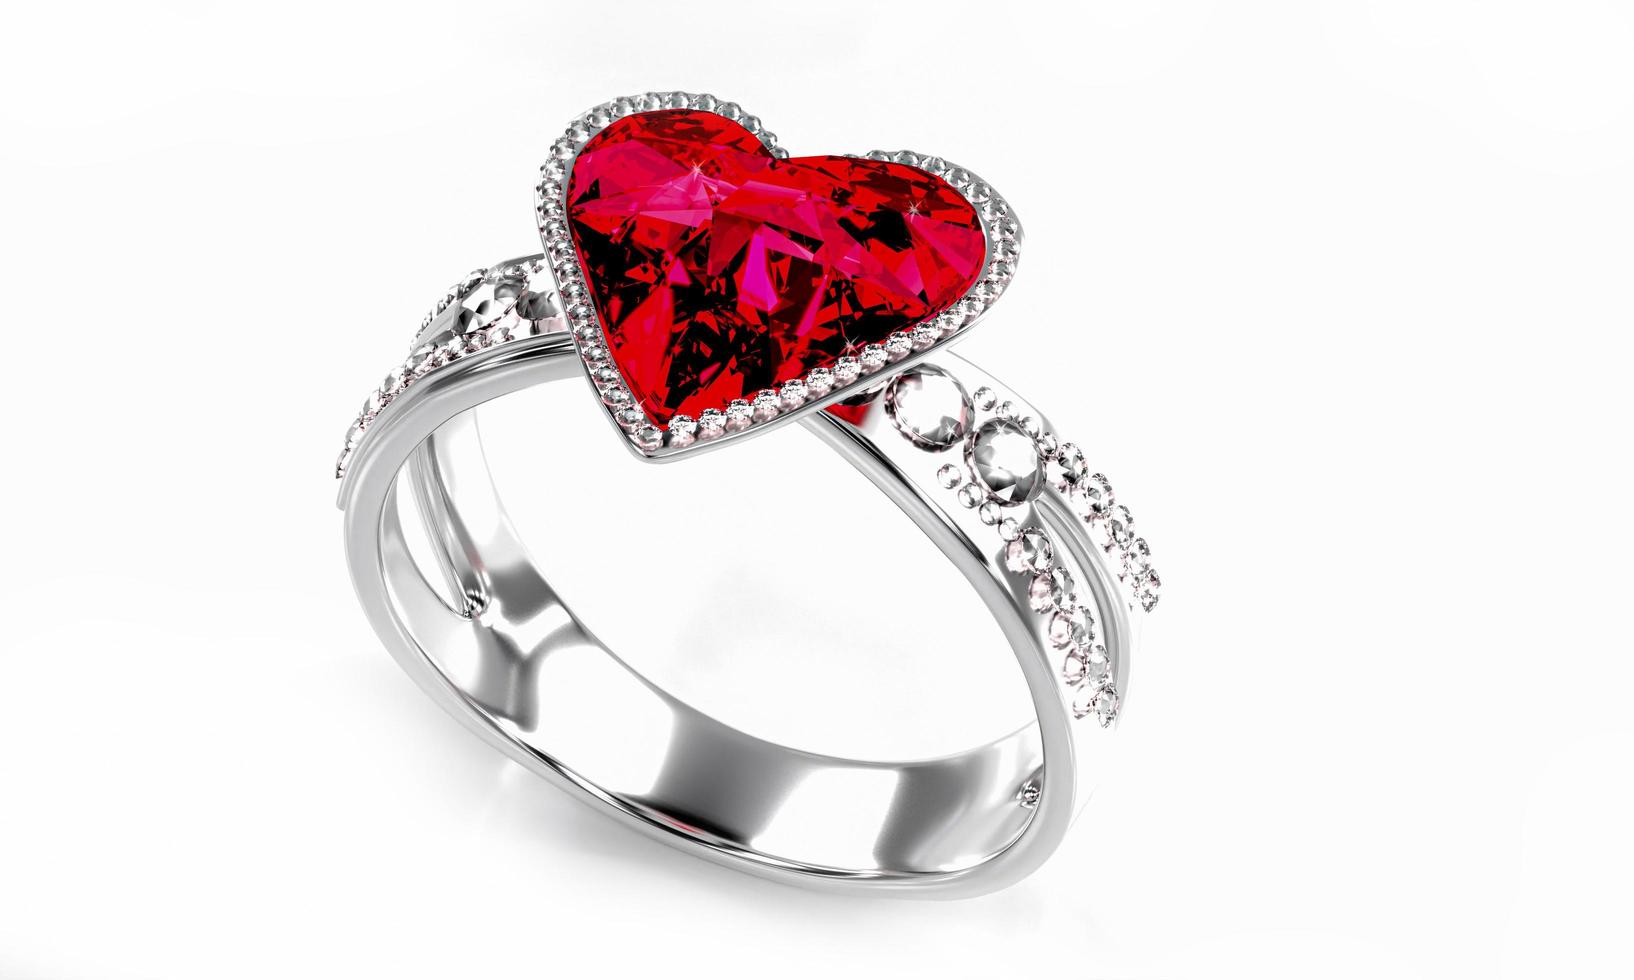 el gran diamante rojo en forma de corazón está rodeado de muchos diamantes en el anillo de oro platino colocado sobre un fondo gris. Elegante anillo de bodas con diamantes para mujer. representación 3d foto